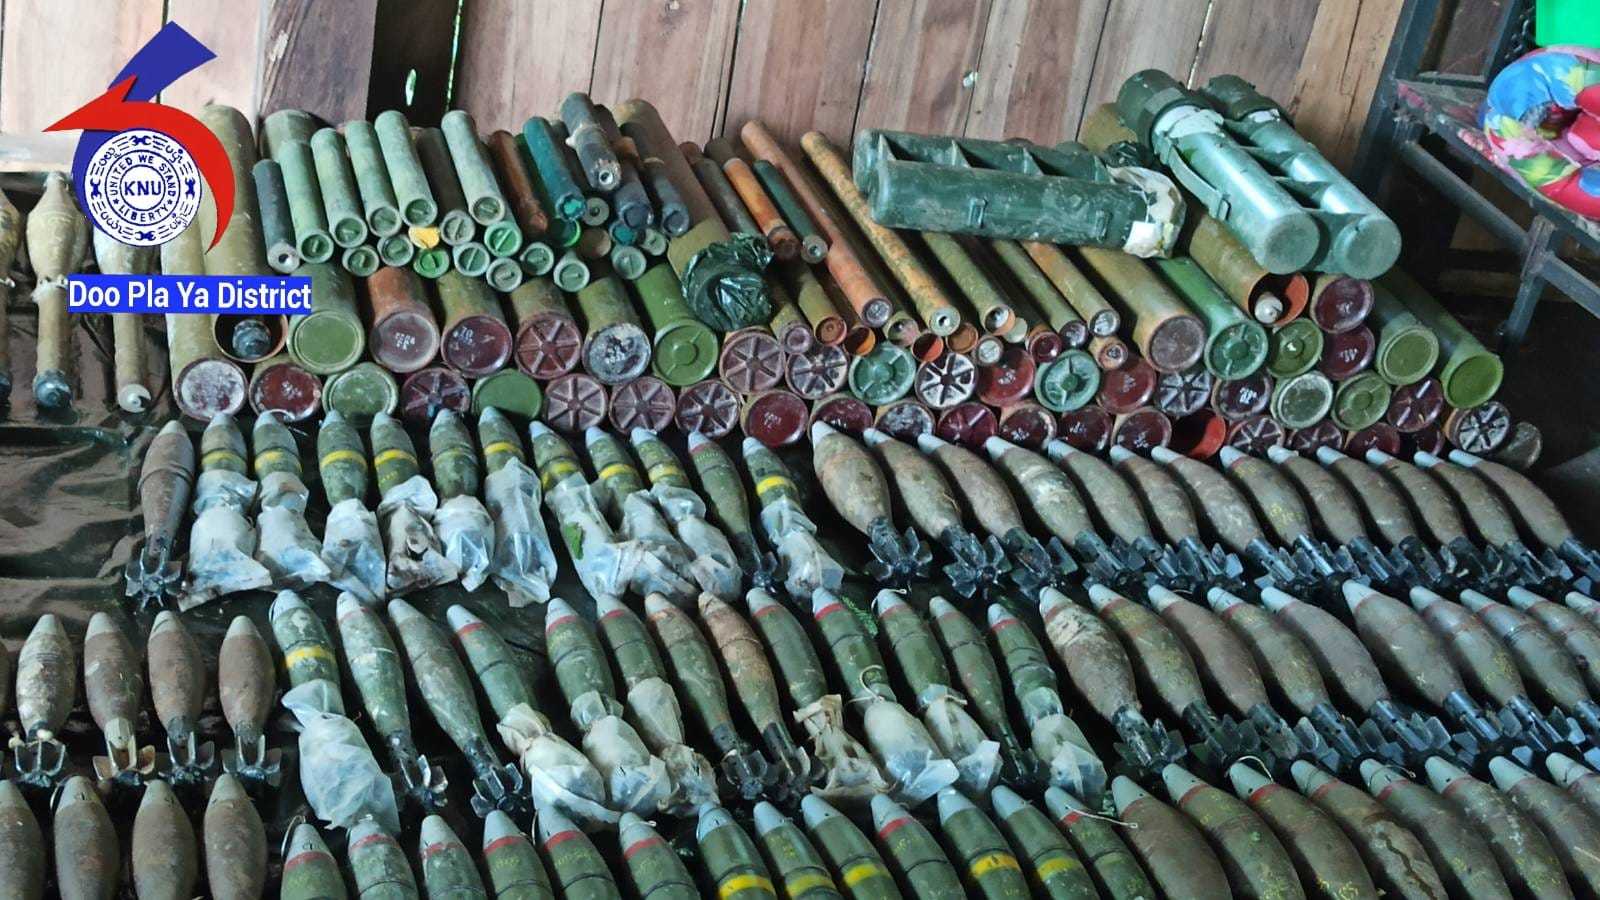 军位于泰缅边境的营地,击毙9名缅军,缴获大量武器弹药